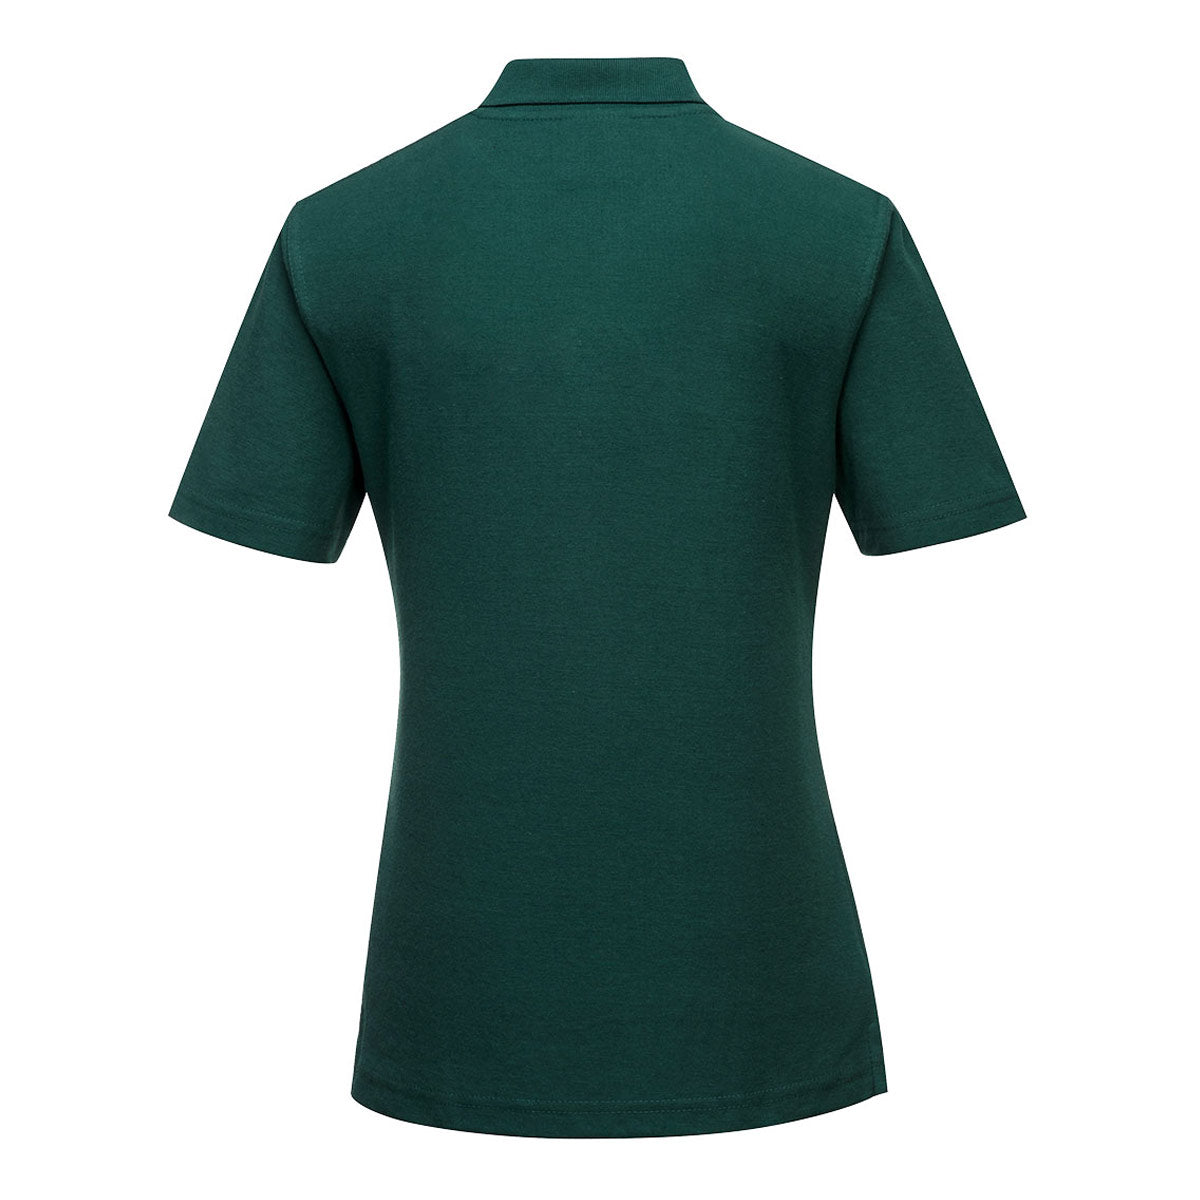 Poloskjorte til damer - Flaske grønn - størrelse: L